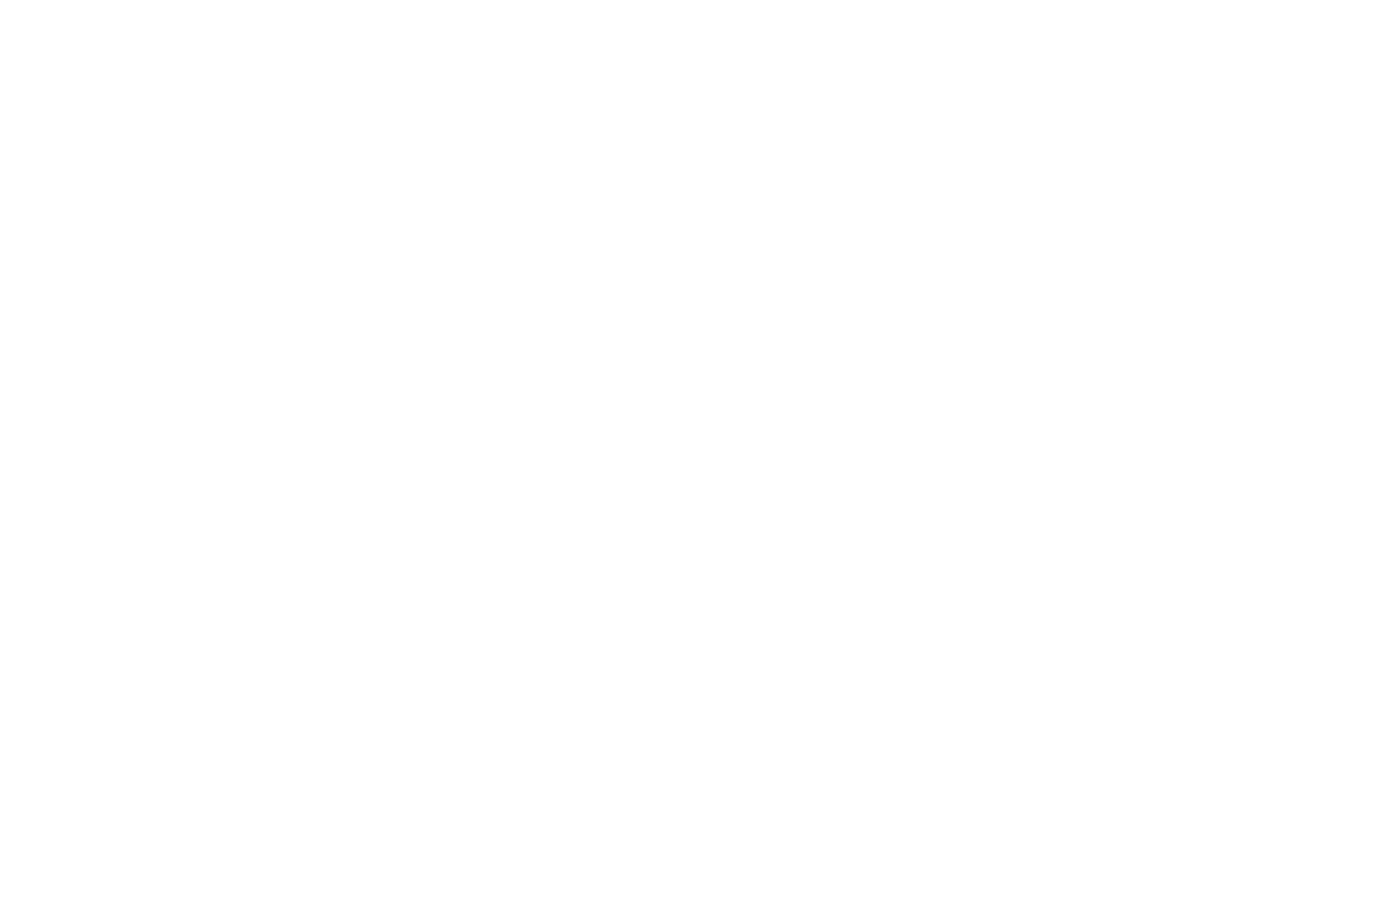 Кейс сервиса BRANDNATION - Фирменный стиль и брендинг пекарни. Брендинговое агентство BRANDNATION в Москве и Санкт-Петербурге. Услуги: разработка логотипа и фирменного стиля, дизайн упаковки, брендбук, ребрендинг, разработка сайта.